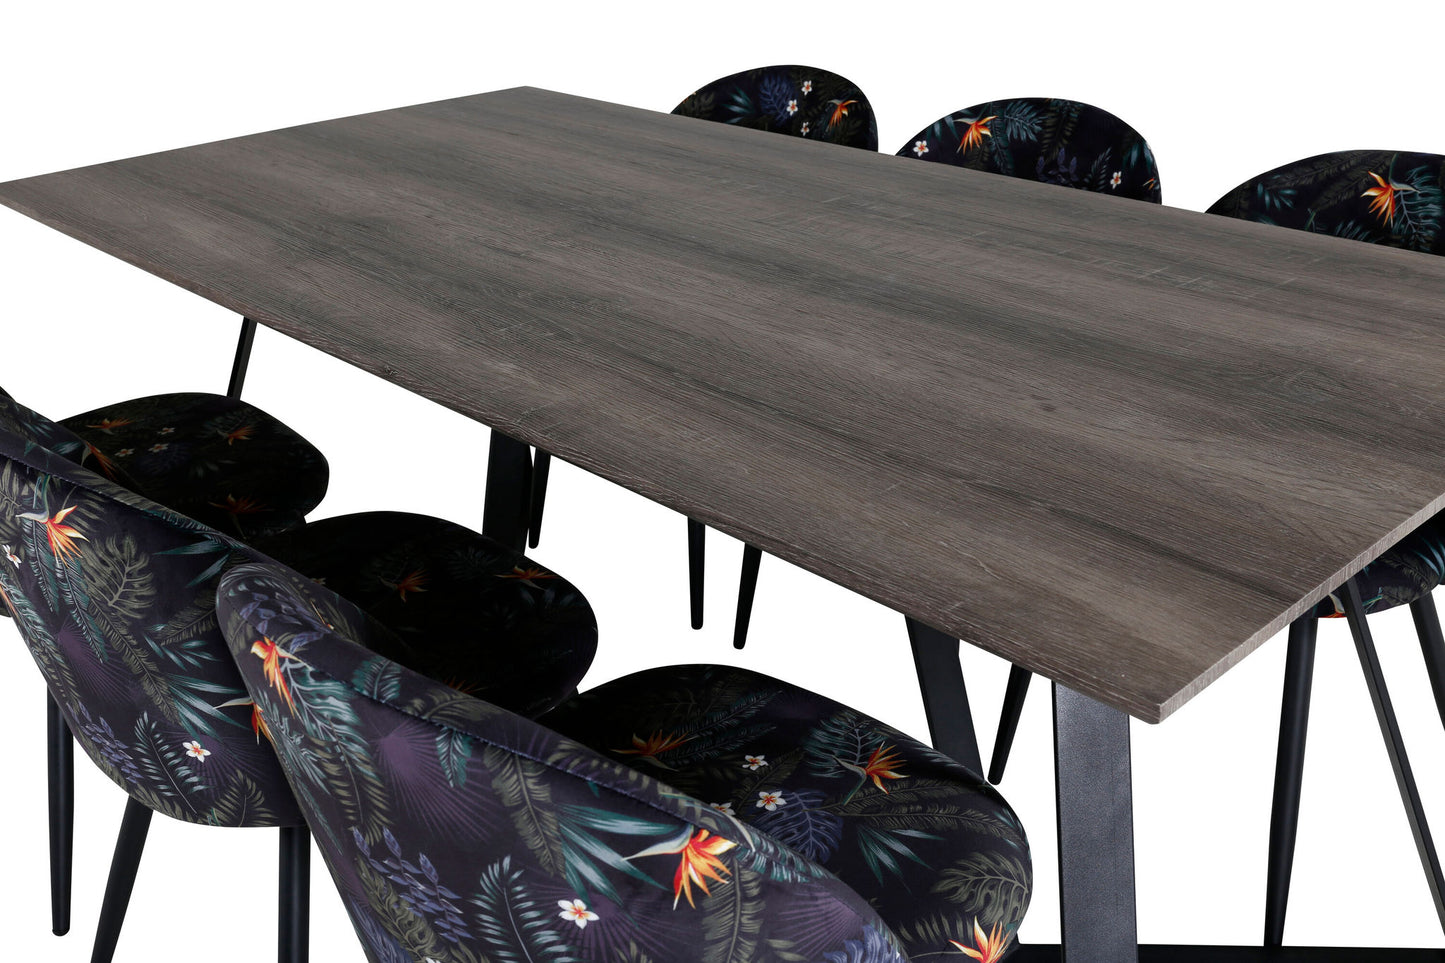 Maria - Spisebord, 180*90*H75 - Grå / Sort+ velour Spisebordsstol - Sort blomster stof